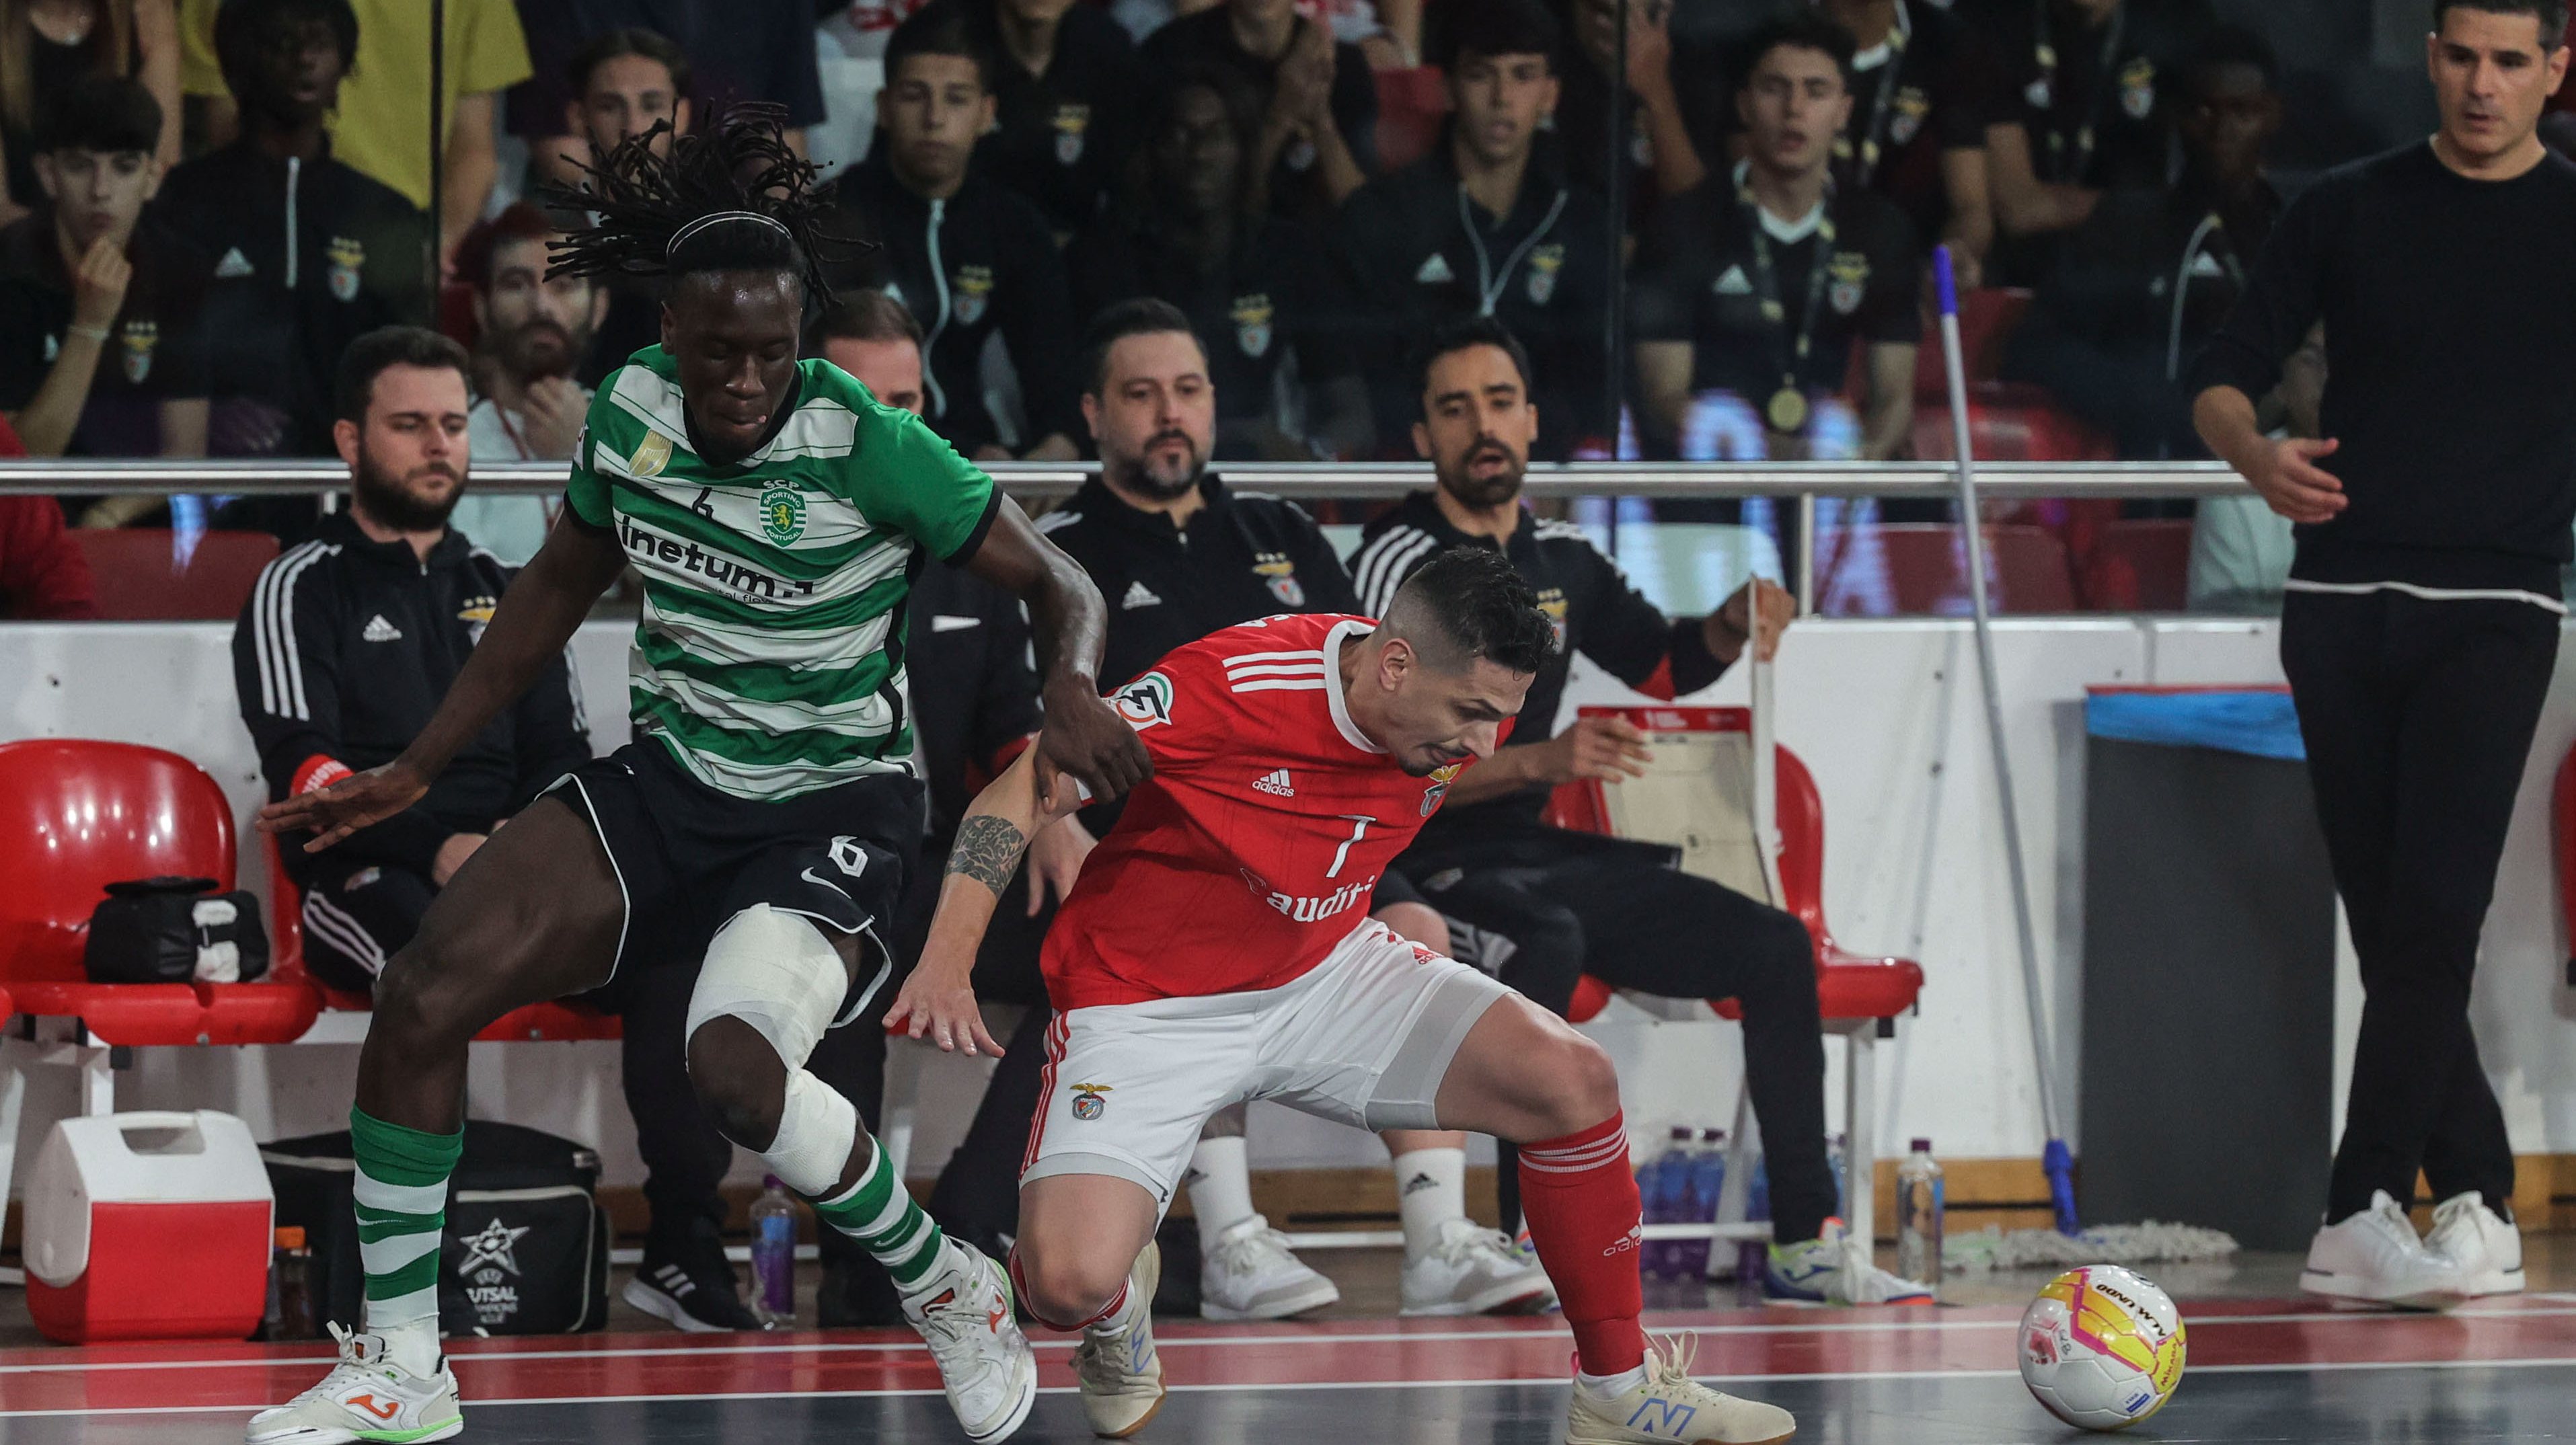 Sporting conseguiu quebrar o fator casa na final e conquistou o tricampeonato de futsal no Pavilhão da Luz após ganhar por 2-1 no prolongamento